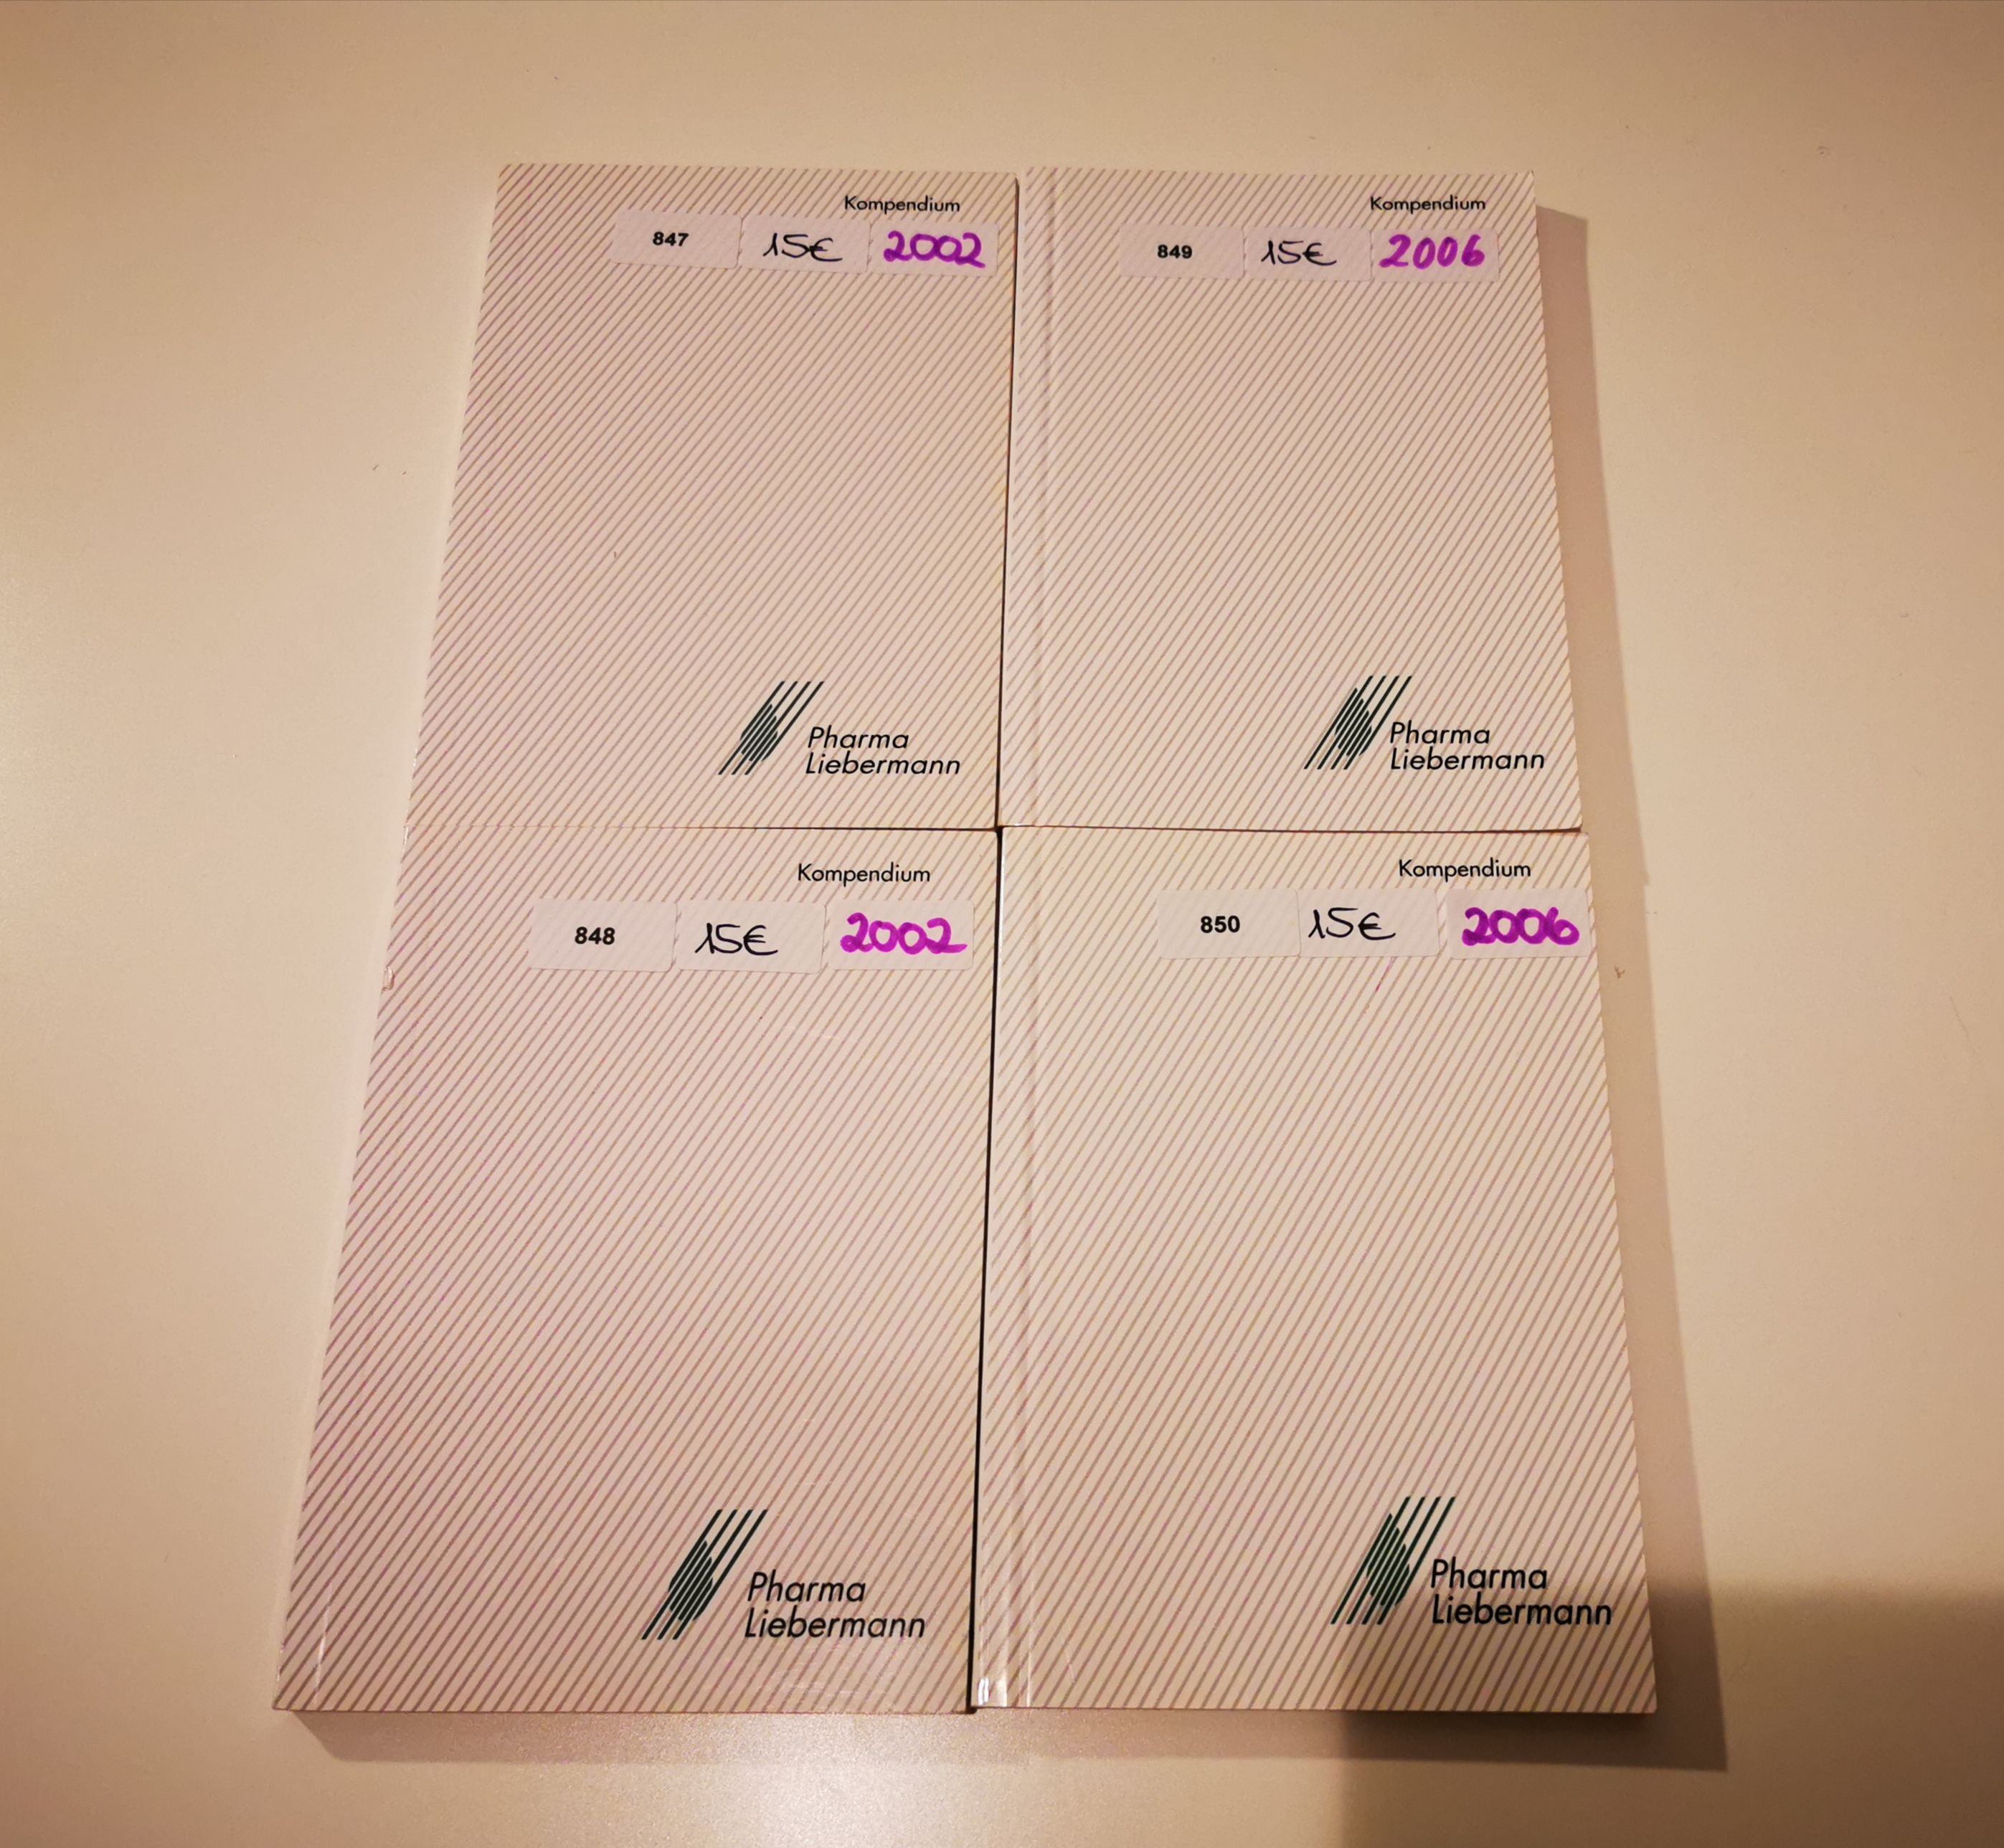 3x Pharma Liebermann Kompendien 2002 und 2006